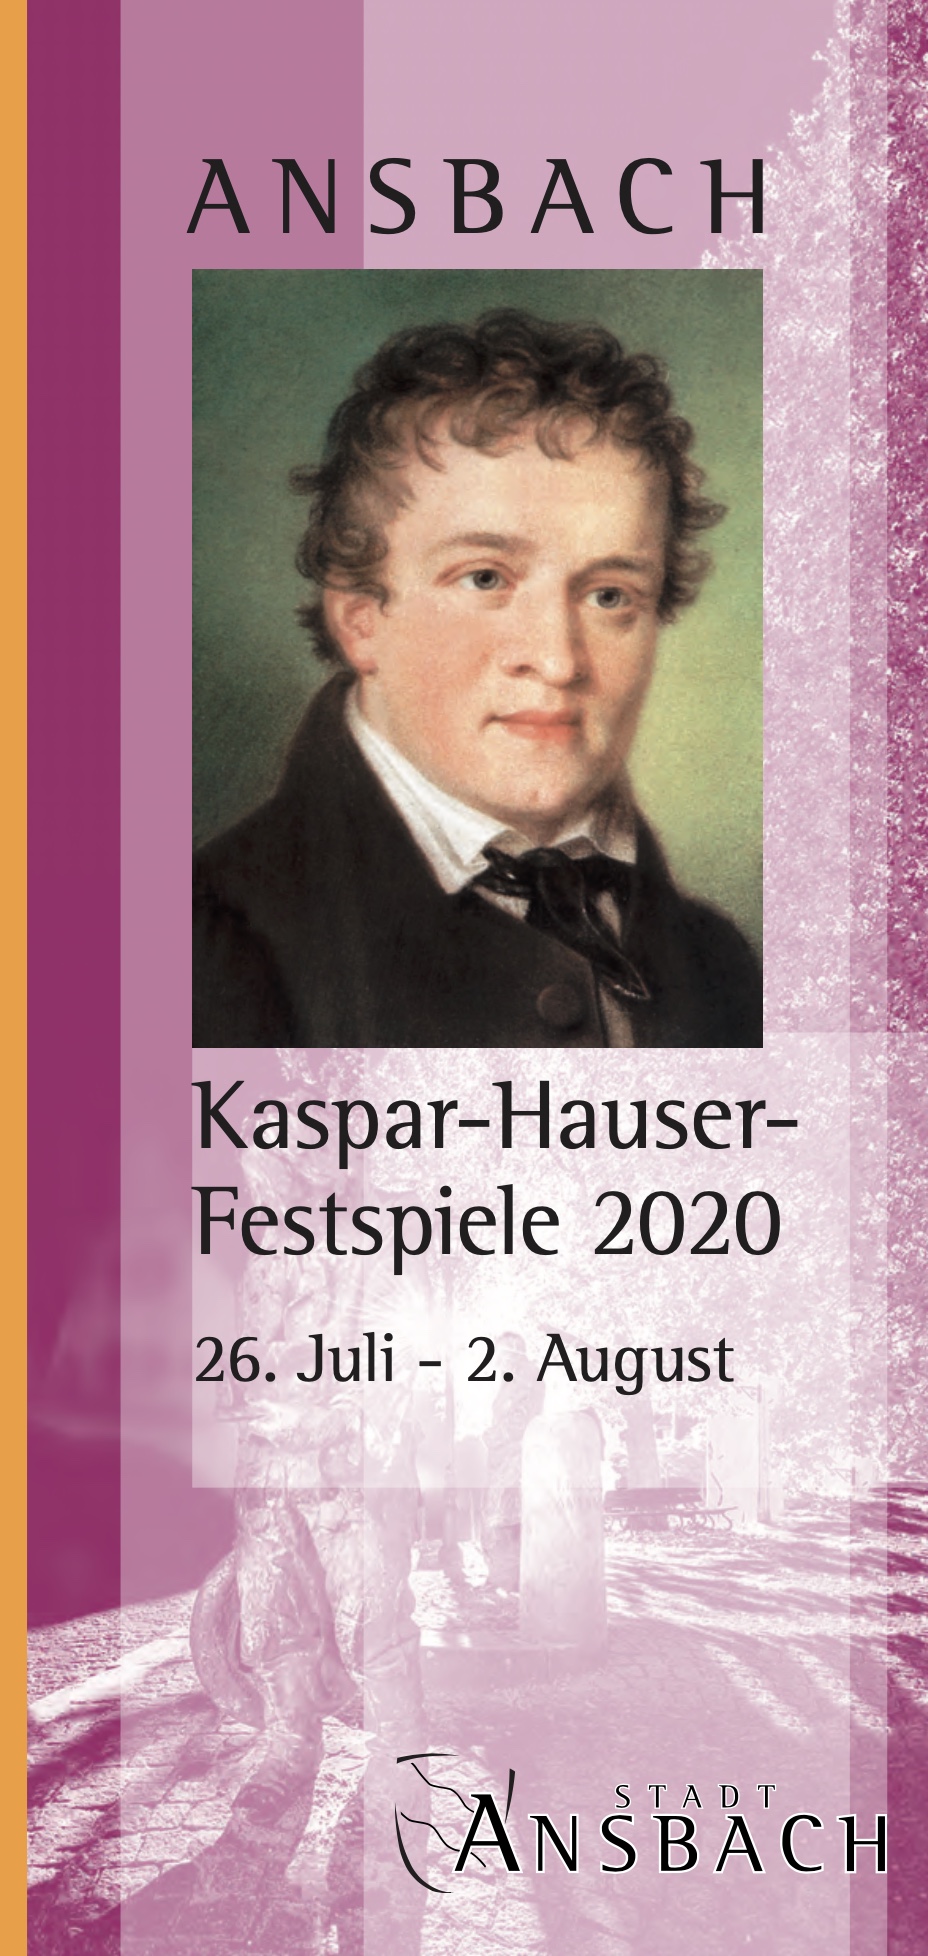 Kaspar-Hauser Festspiele 2020